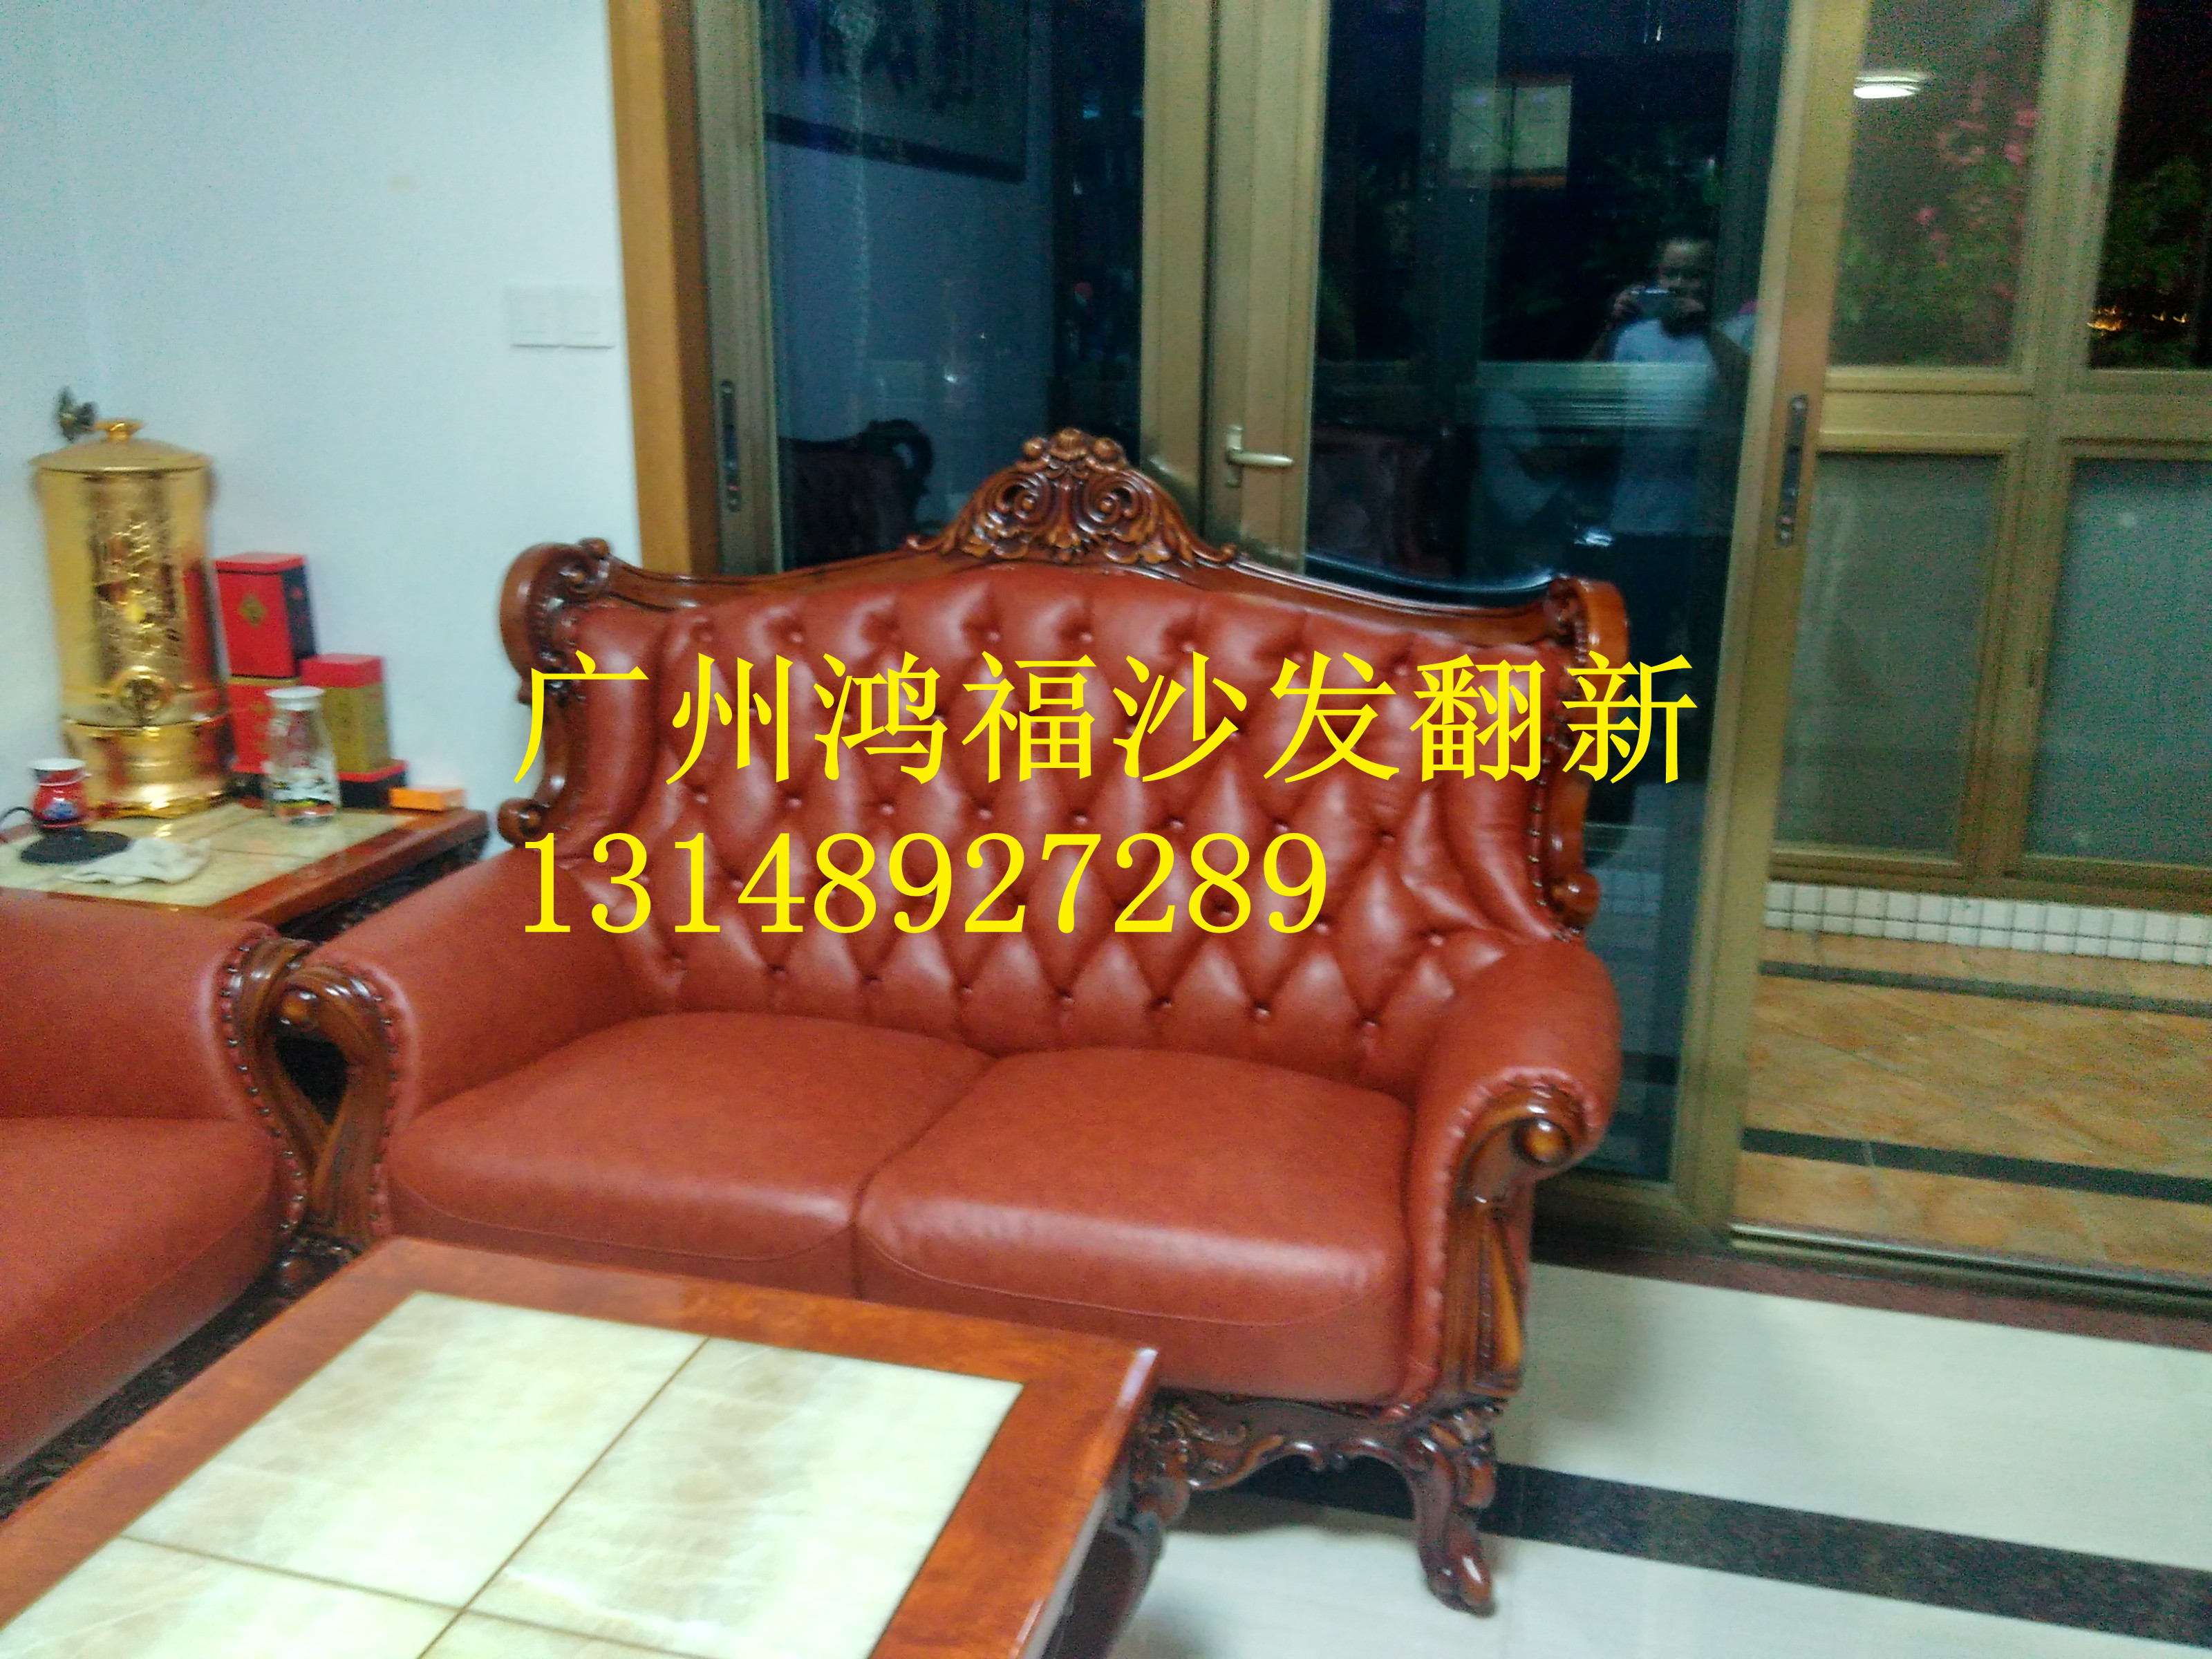 供应用于沙发的广州番禺区沙发维修换皮换布、专业